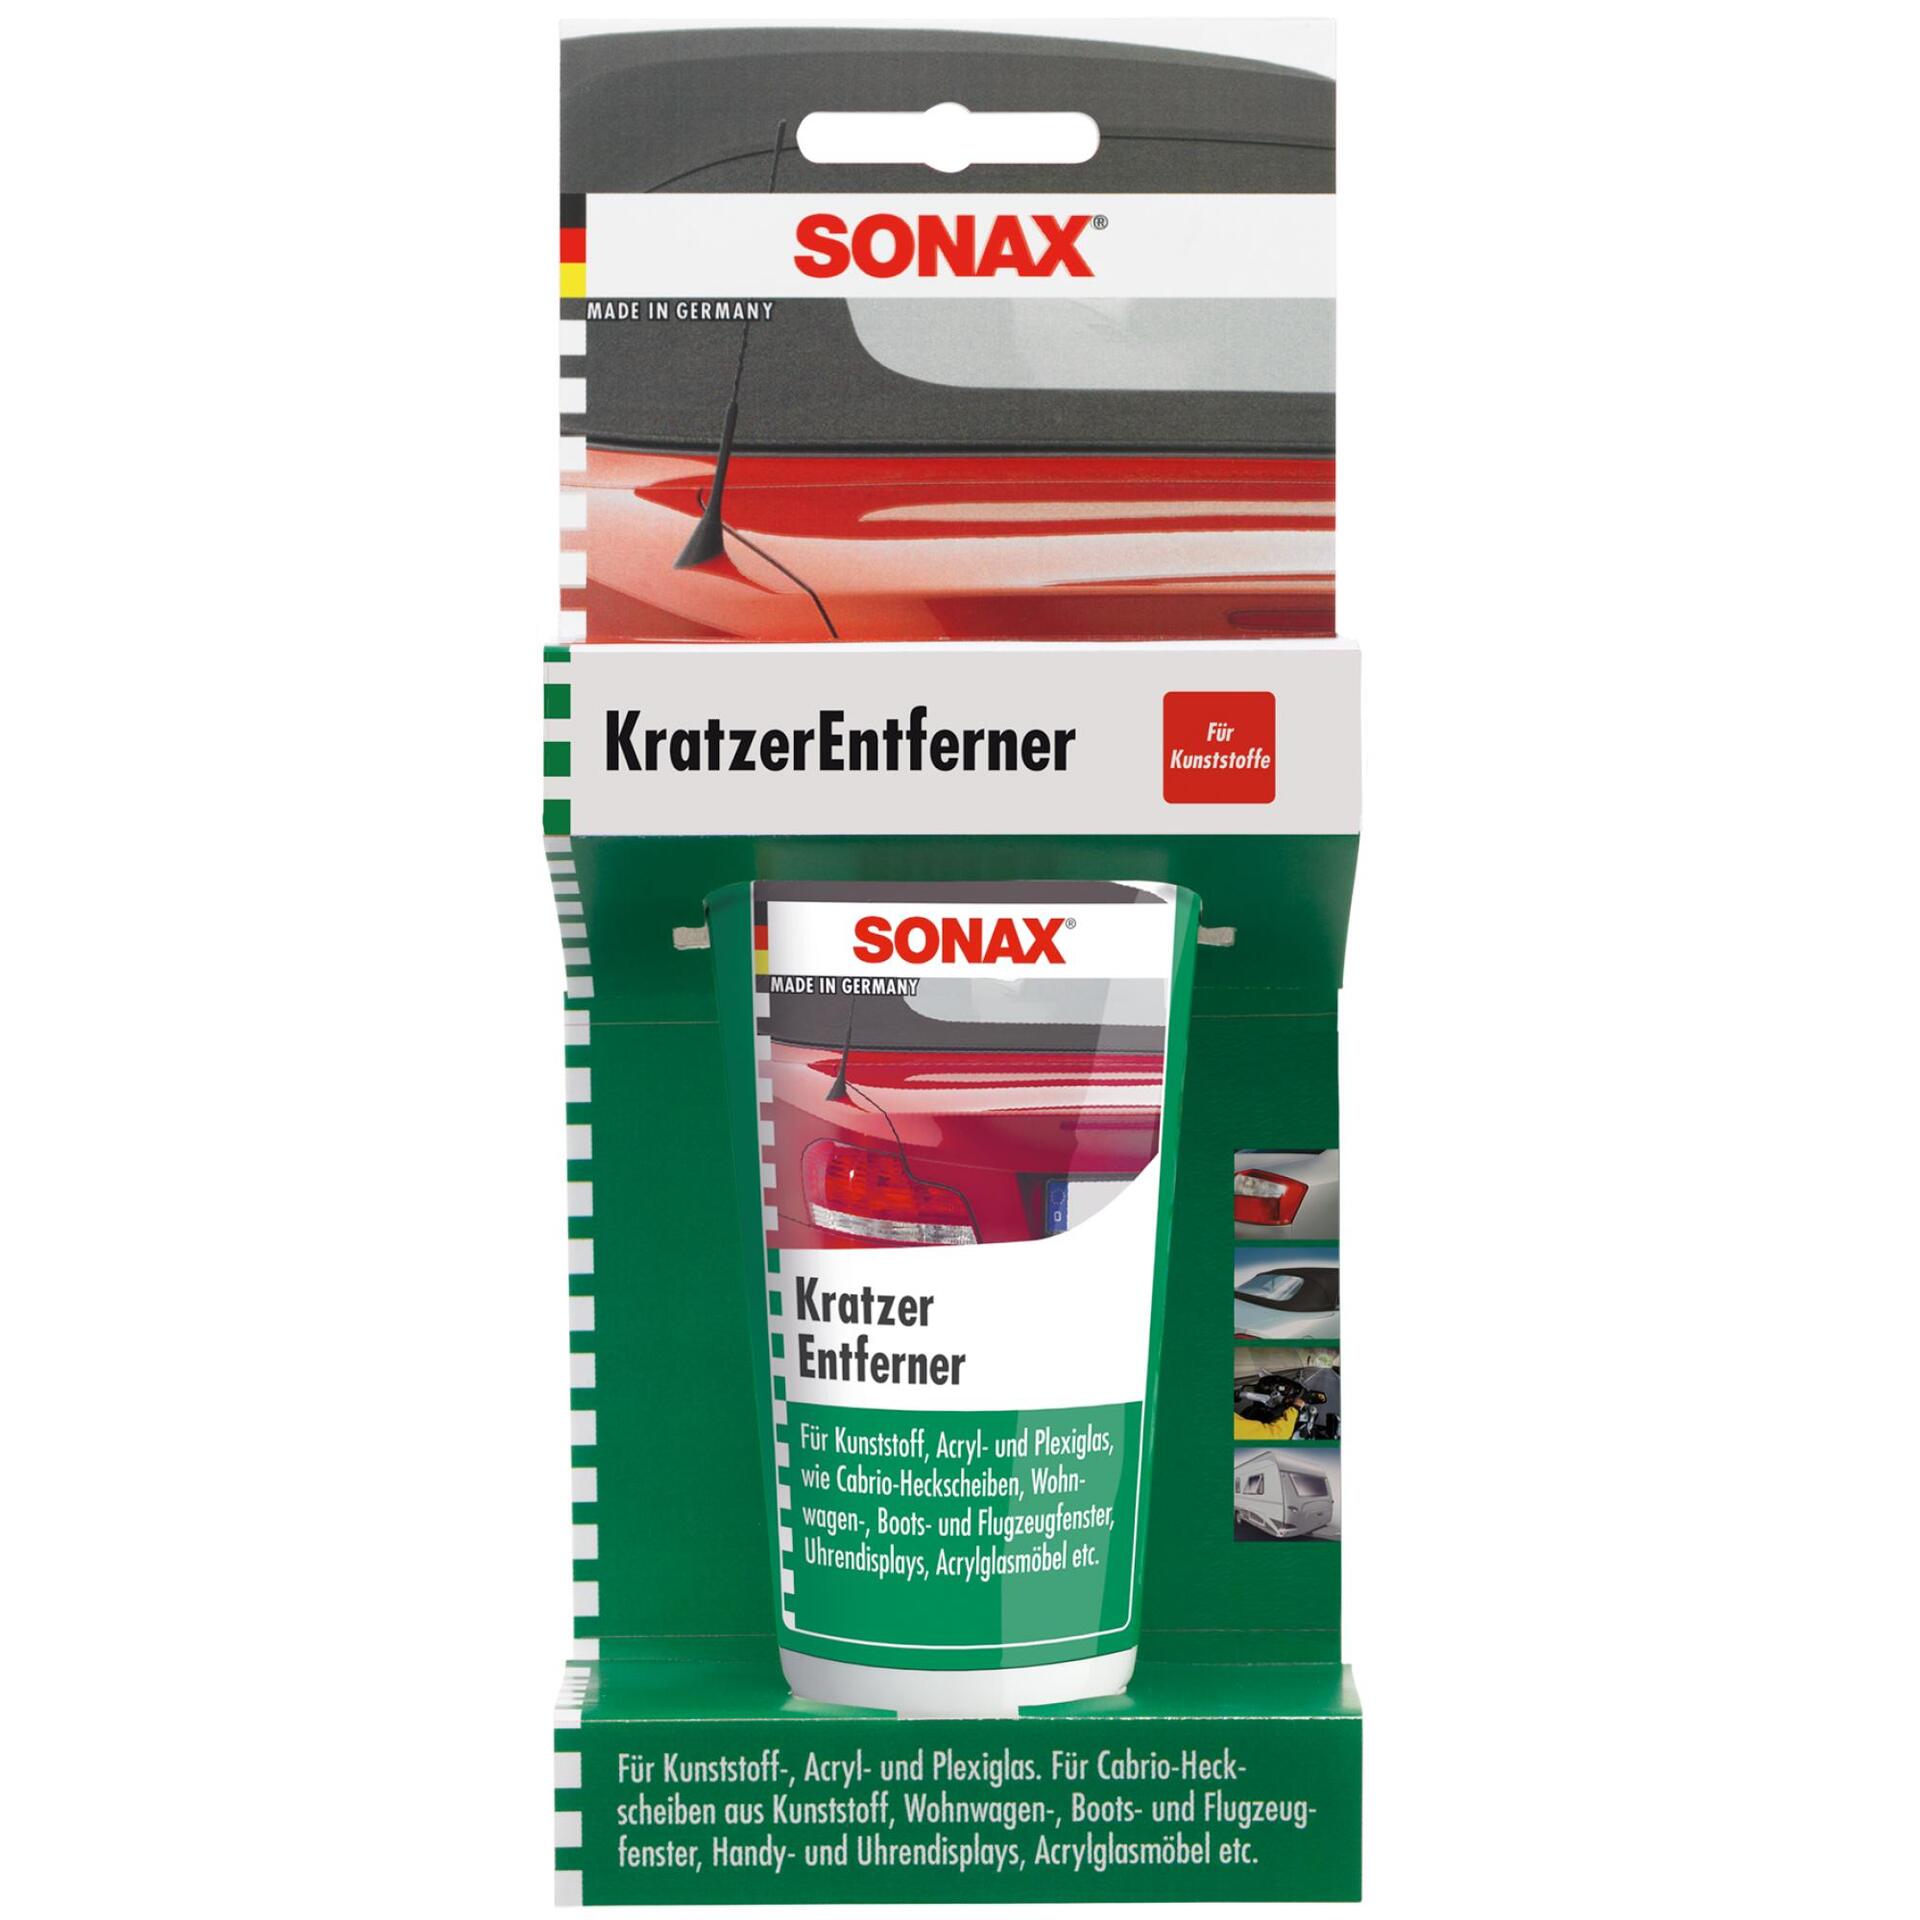 SONAX Kratzer Entferner 75ml